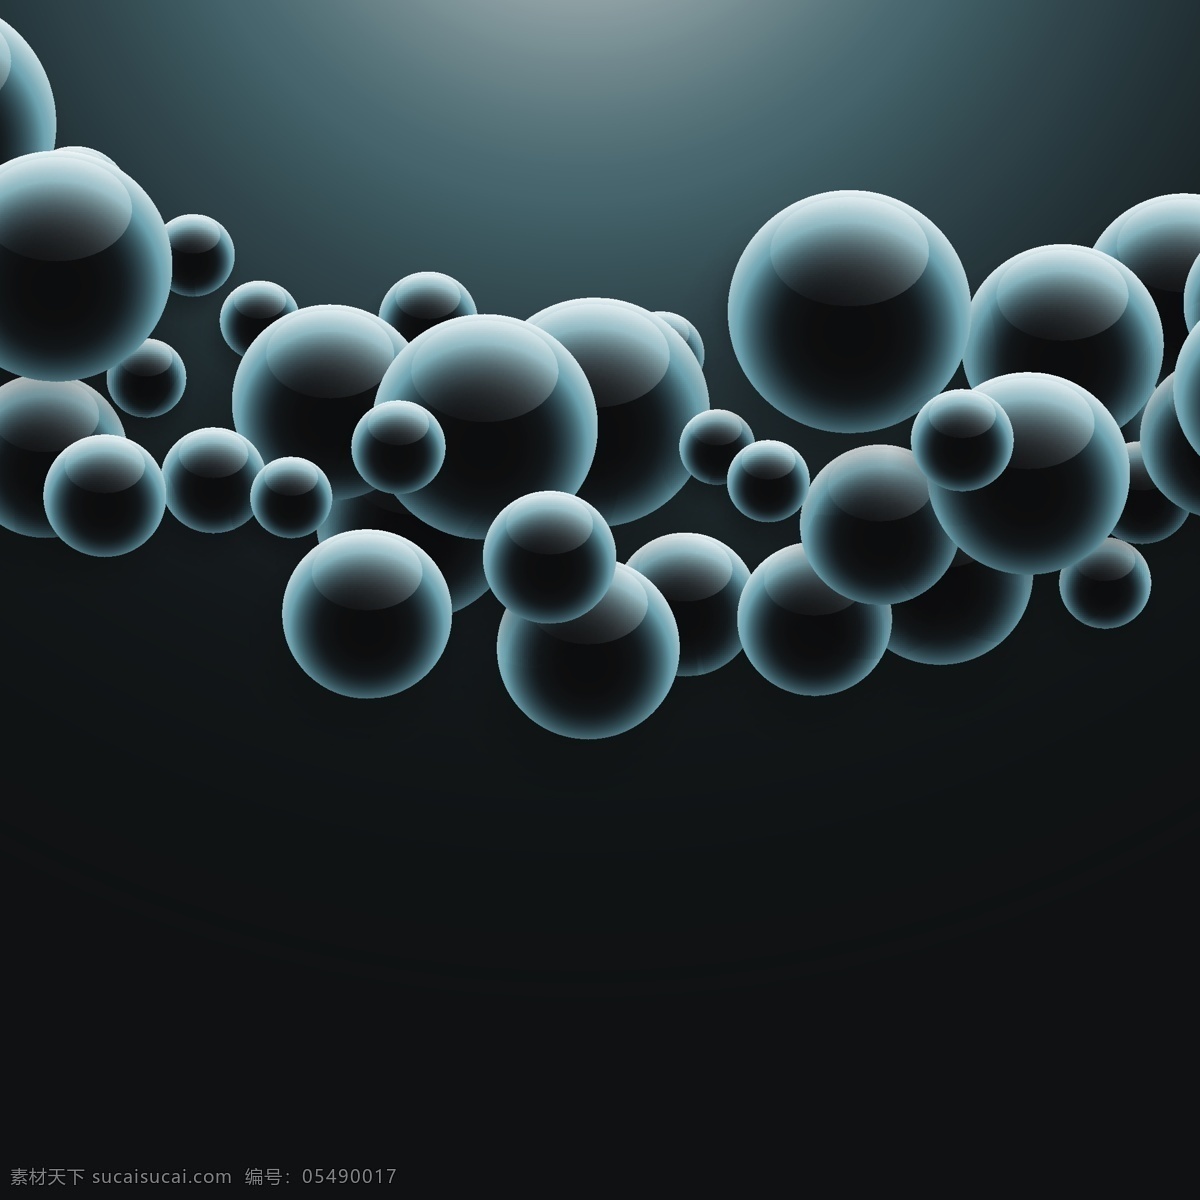 三维 球面 暗 背景 抽象背景 抽象 医学 科学 能量 有机 未来 化学 球体 分子 原子 抽象形状 物理 粒子 核